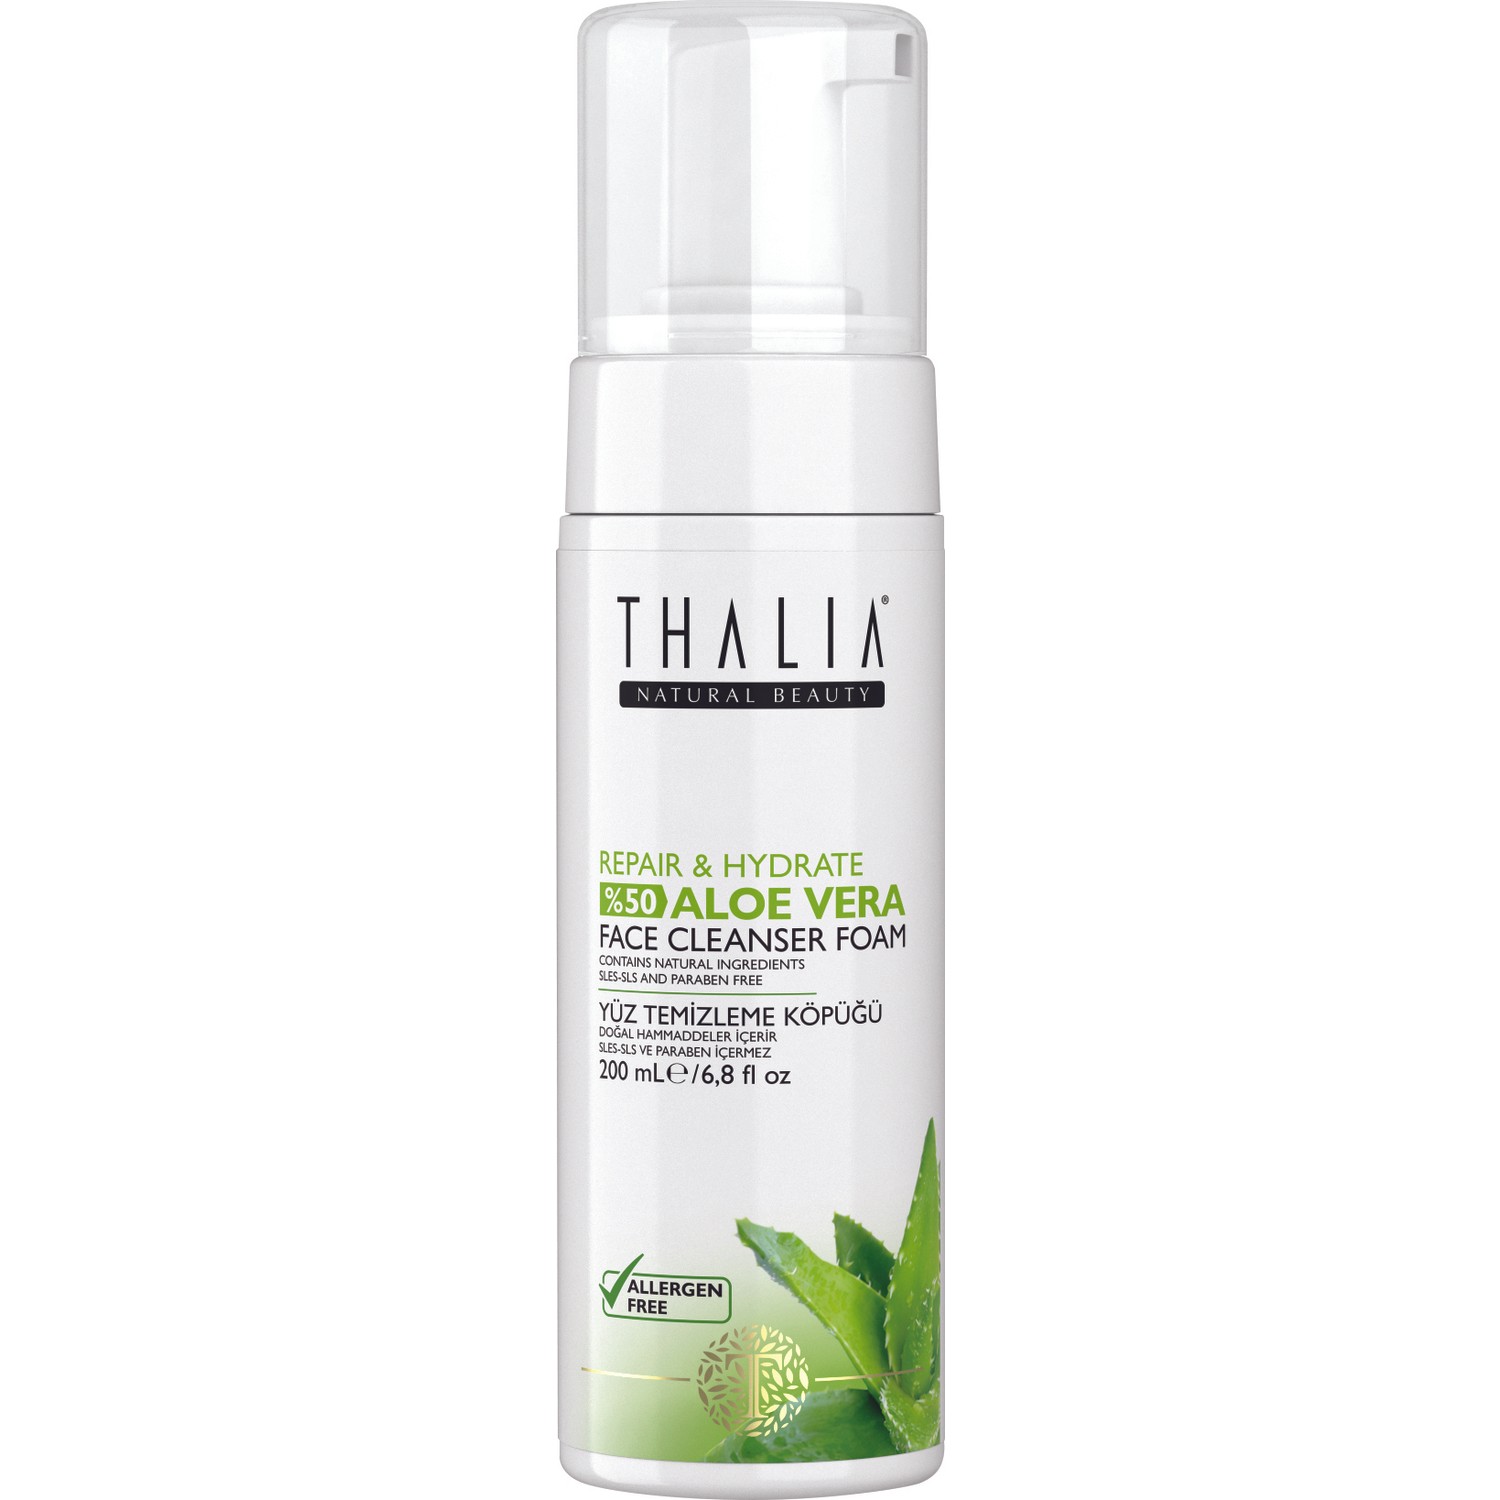 Очищающая пенка для лица Thalia с 99% экстрактом алоэ вера, 200 мл гель для лица и тела thalia natural beauty repair